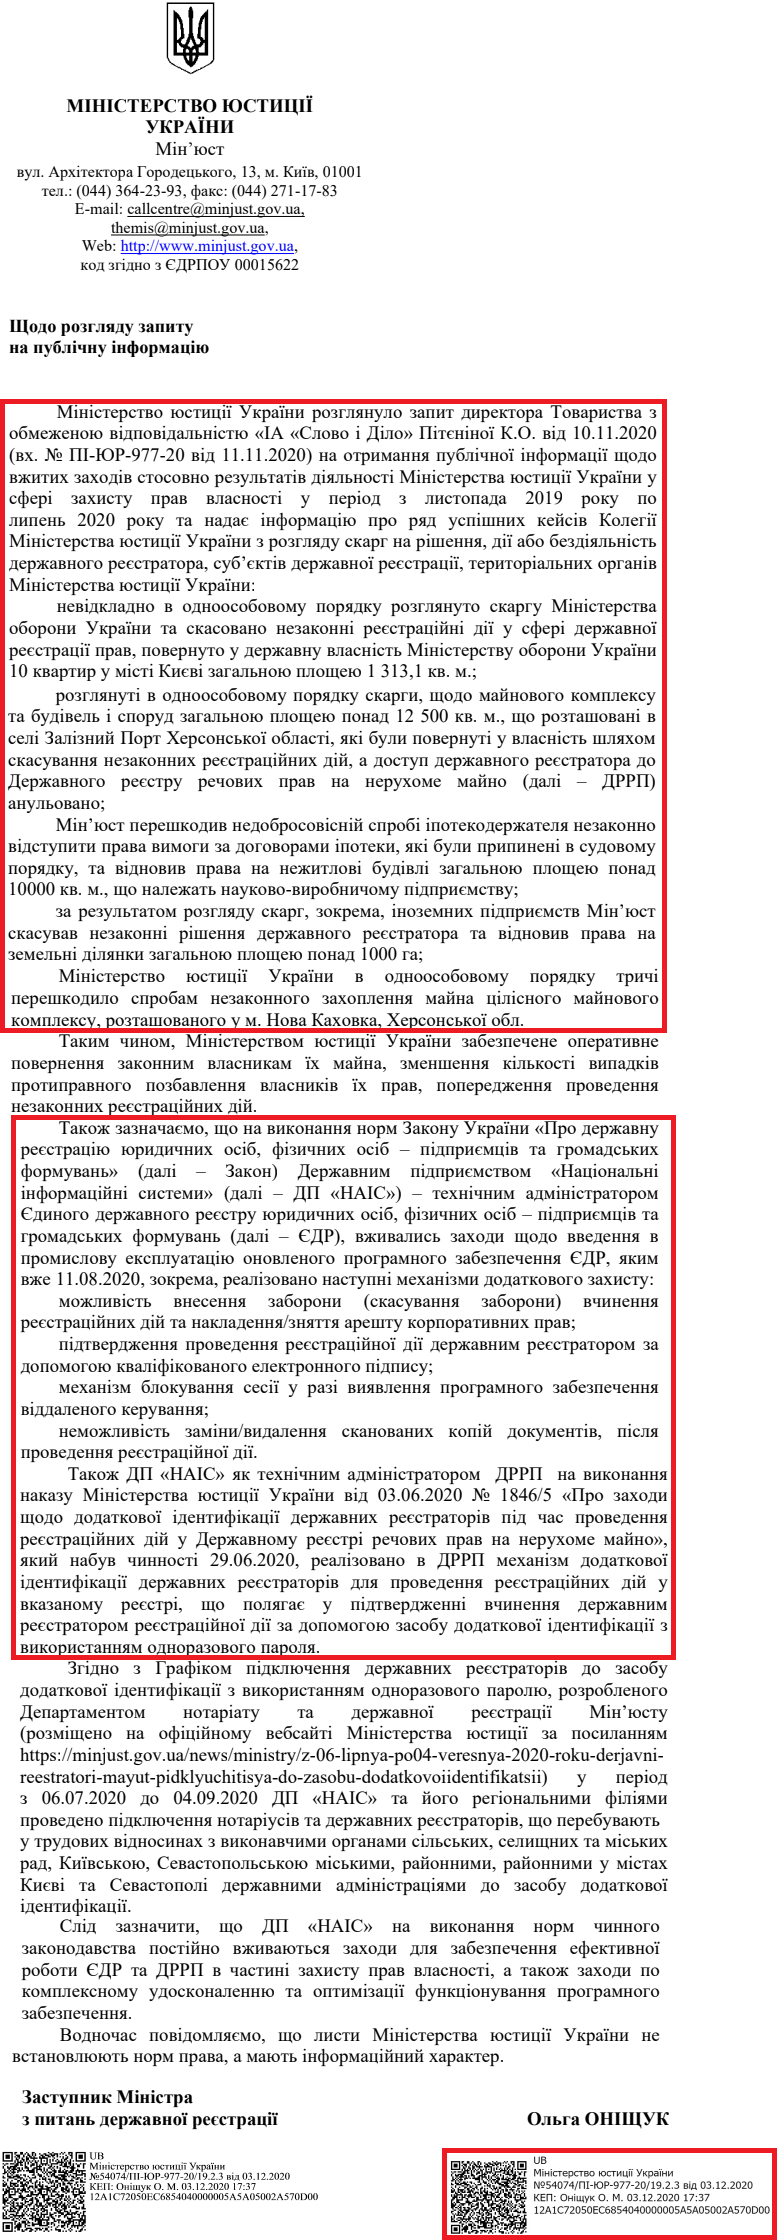 Лист Міністерства юстиції України від 3 грудня 2020 року